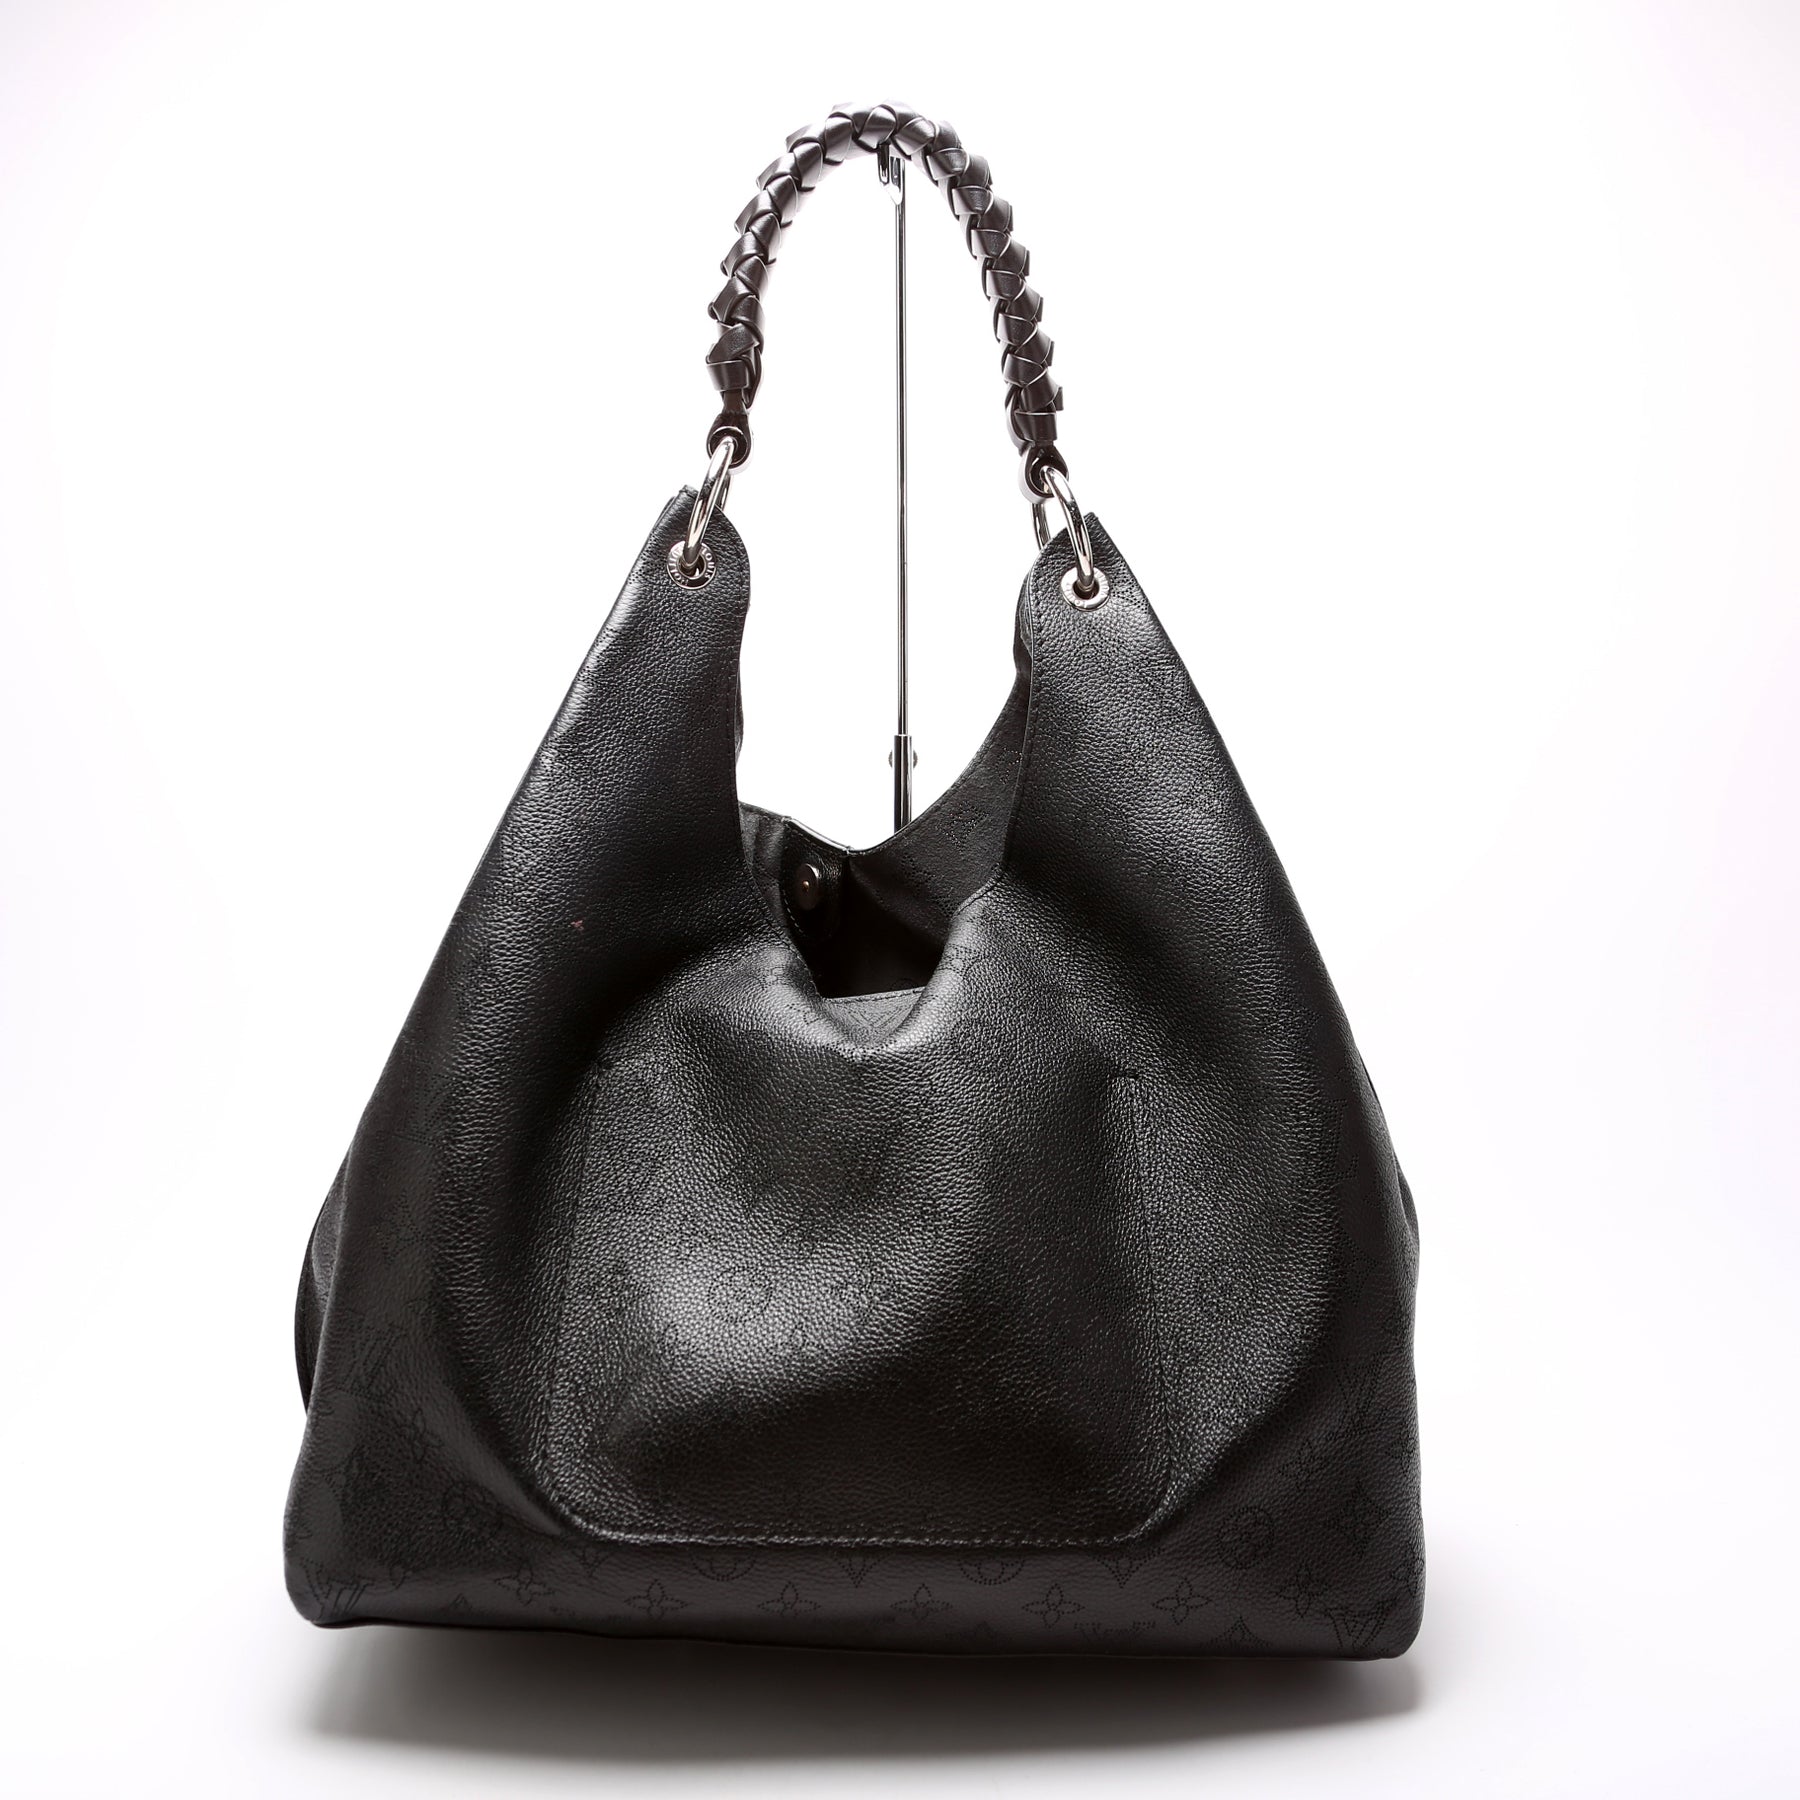 Carmel Mahina - Women - Handbags